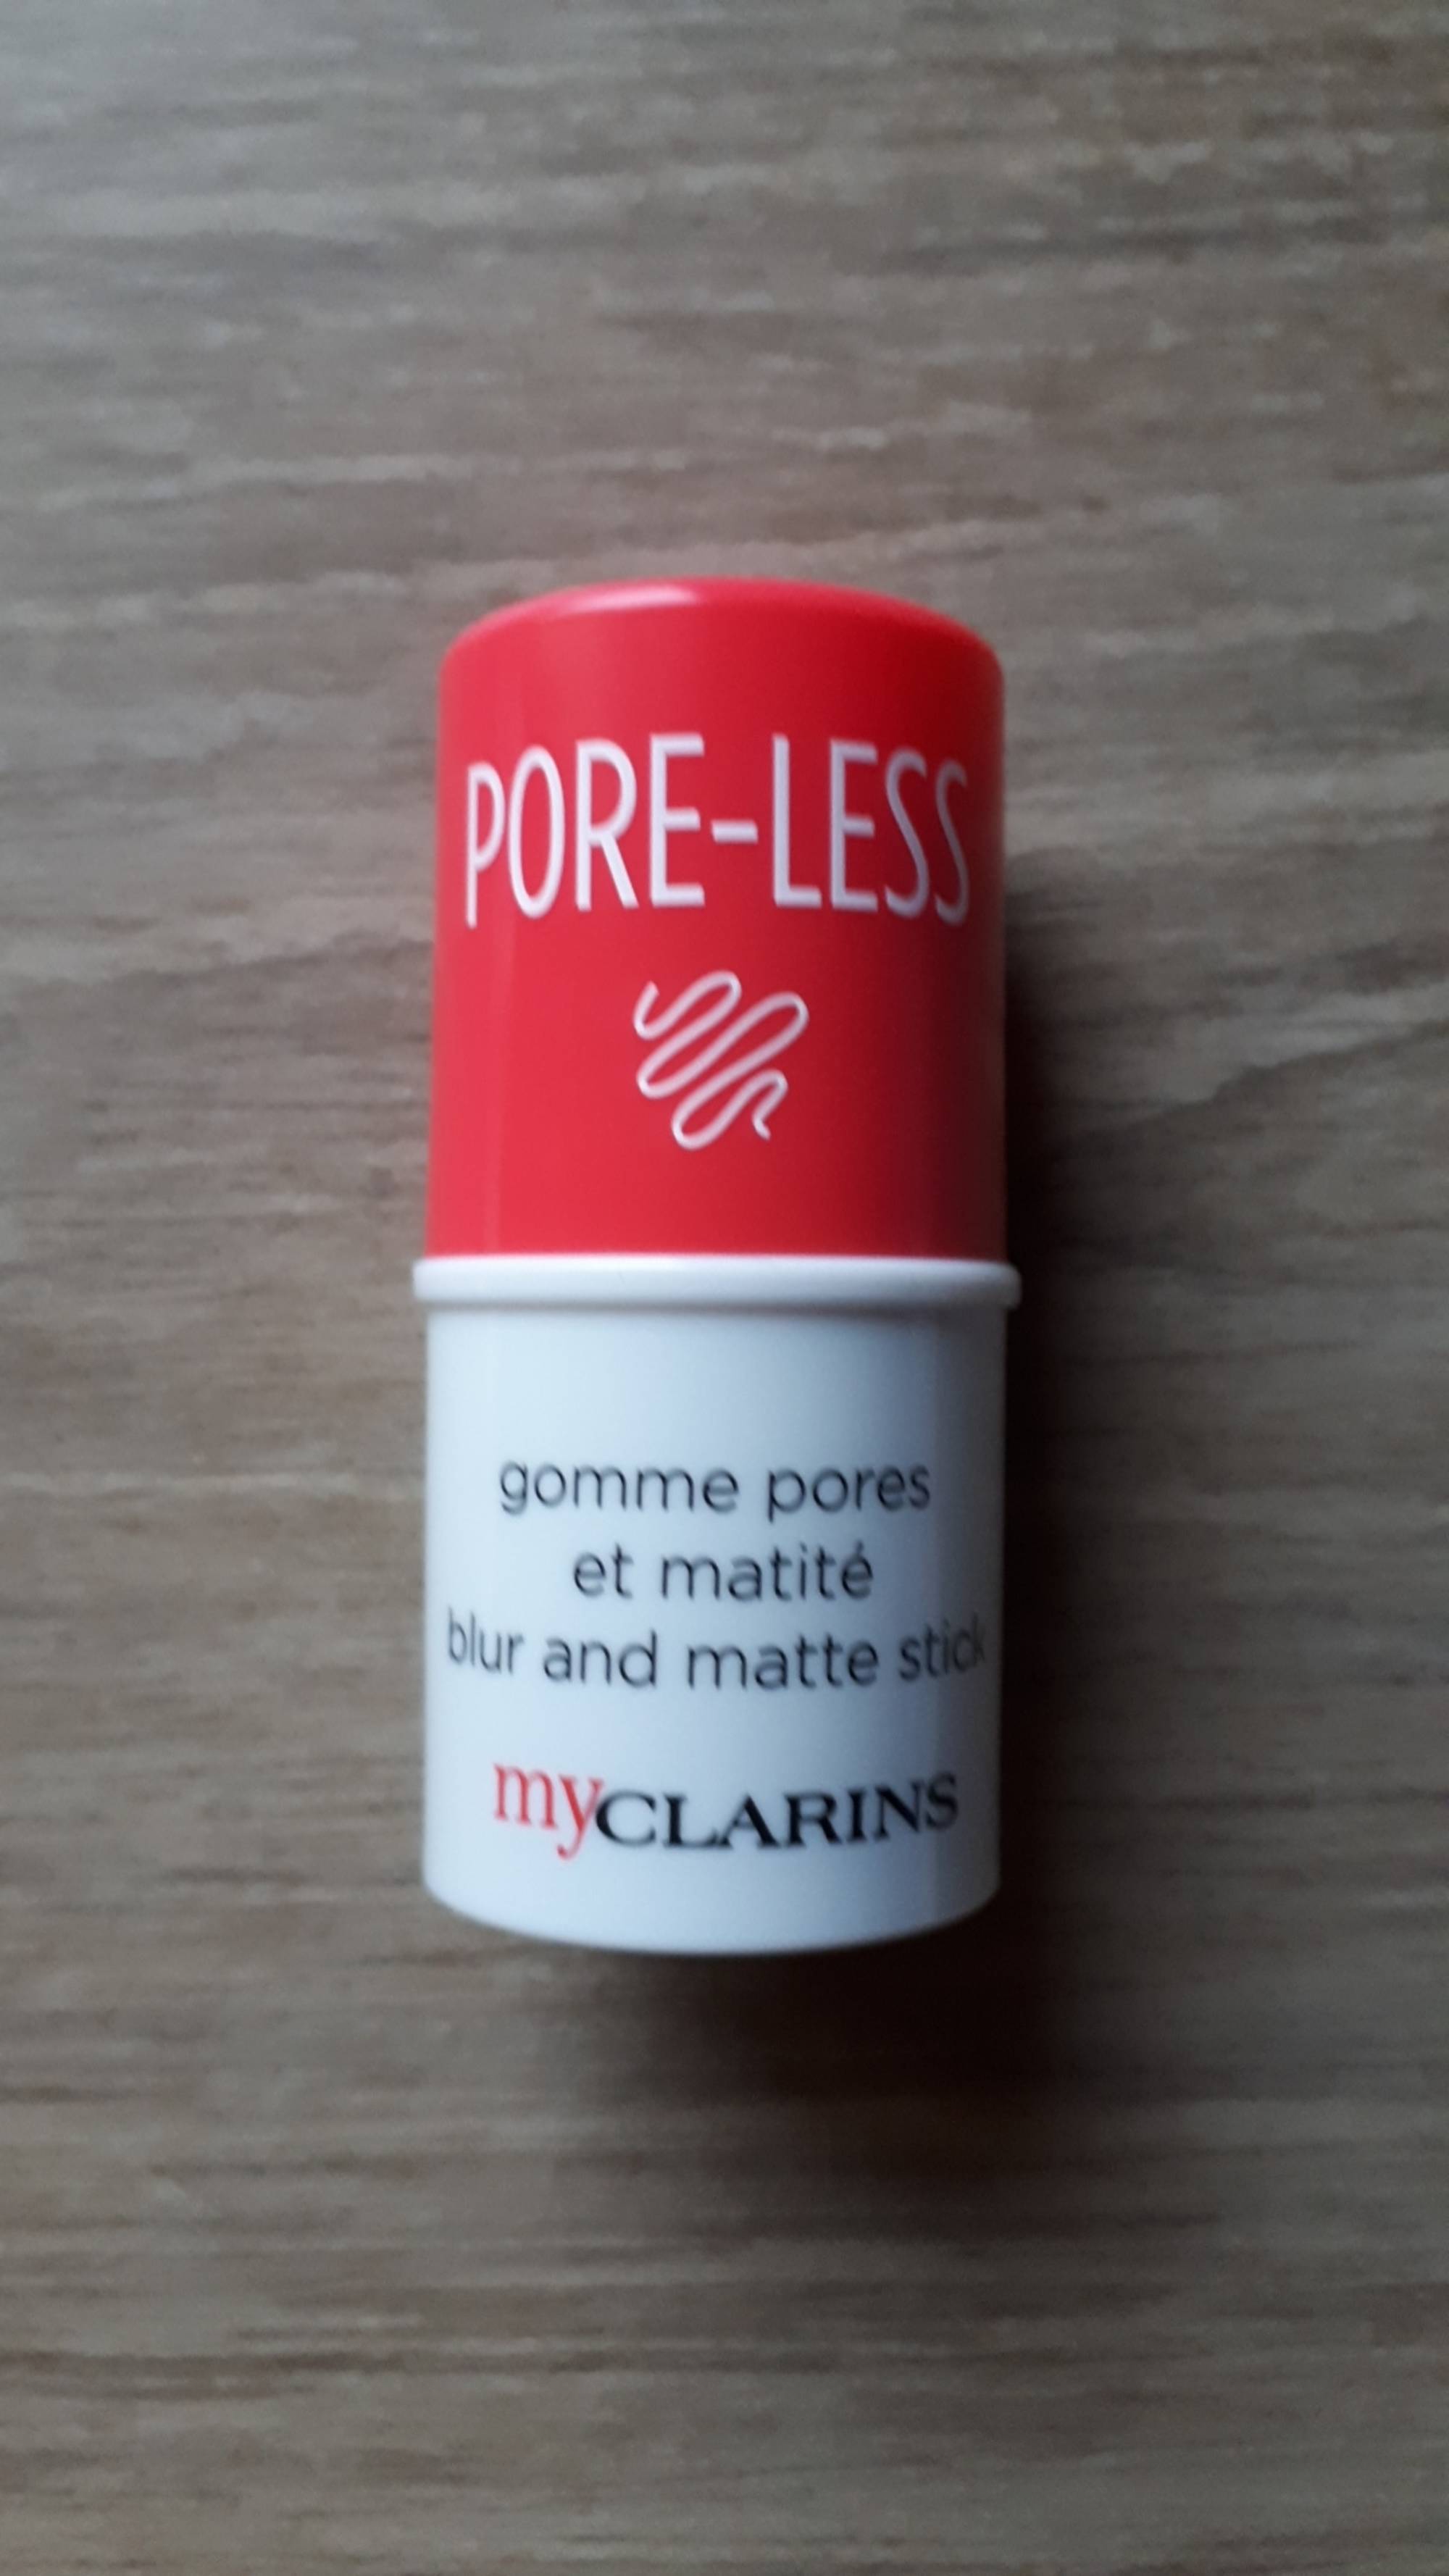 CLARINS - Pore-less - Gomme pores et matité